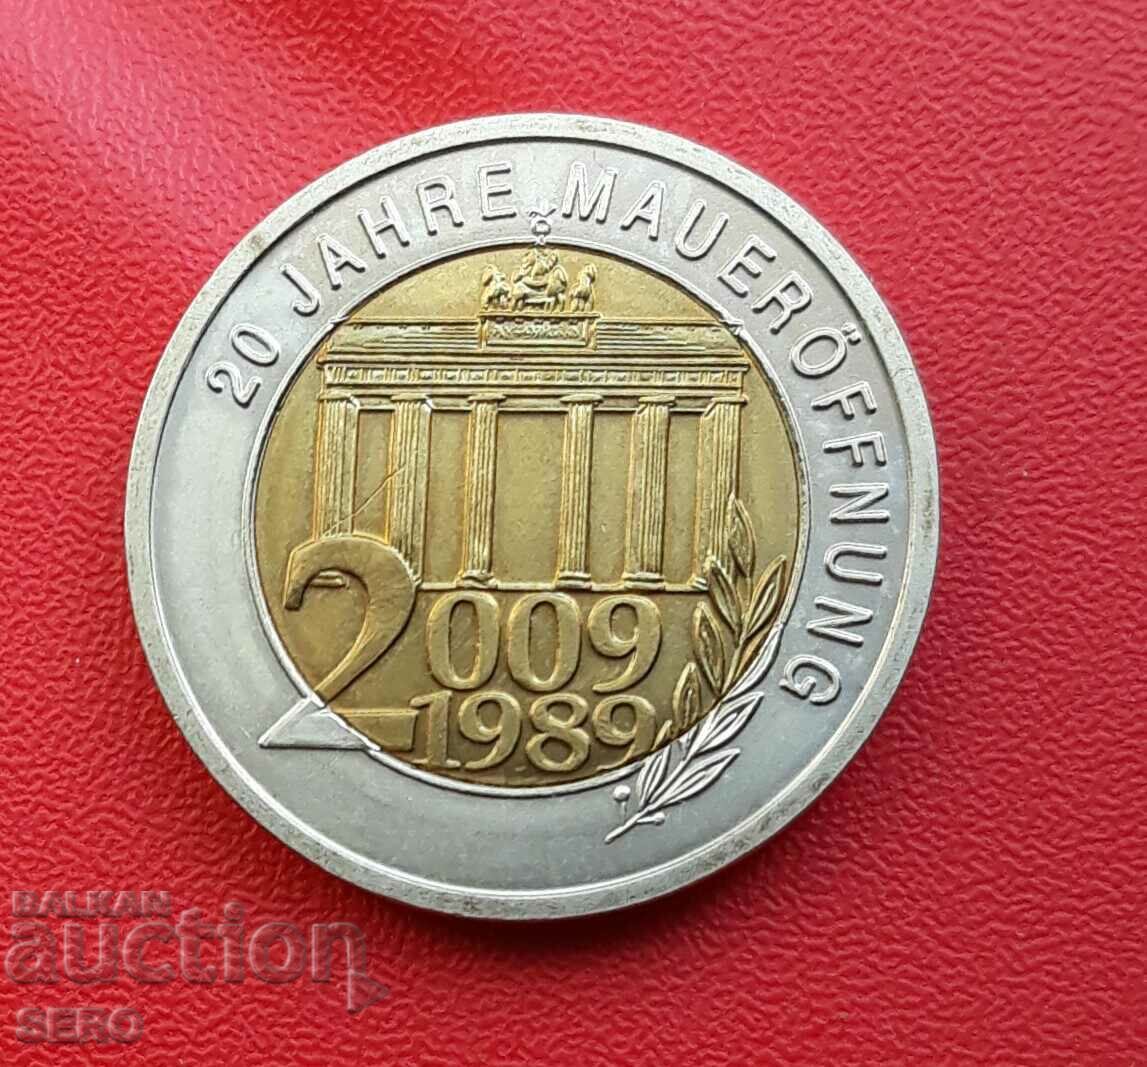 Γερμανία-Μετάλλιο 2009-20 από την πτώση του Τείχους του Βερολίνου